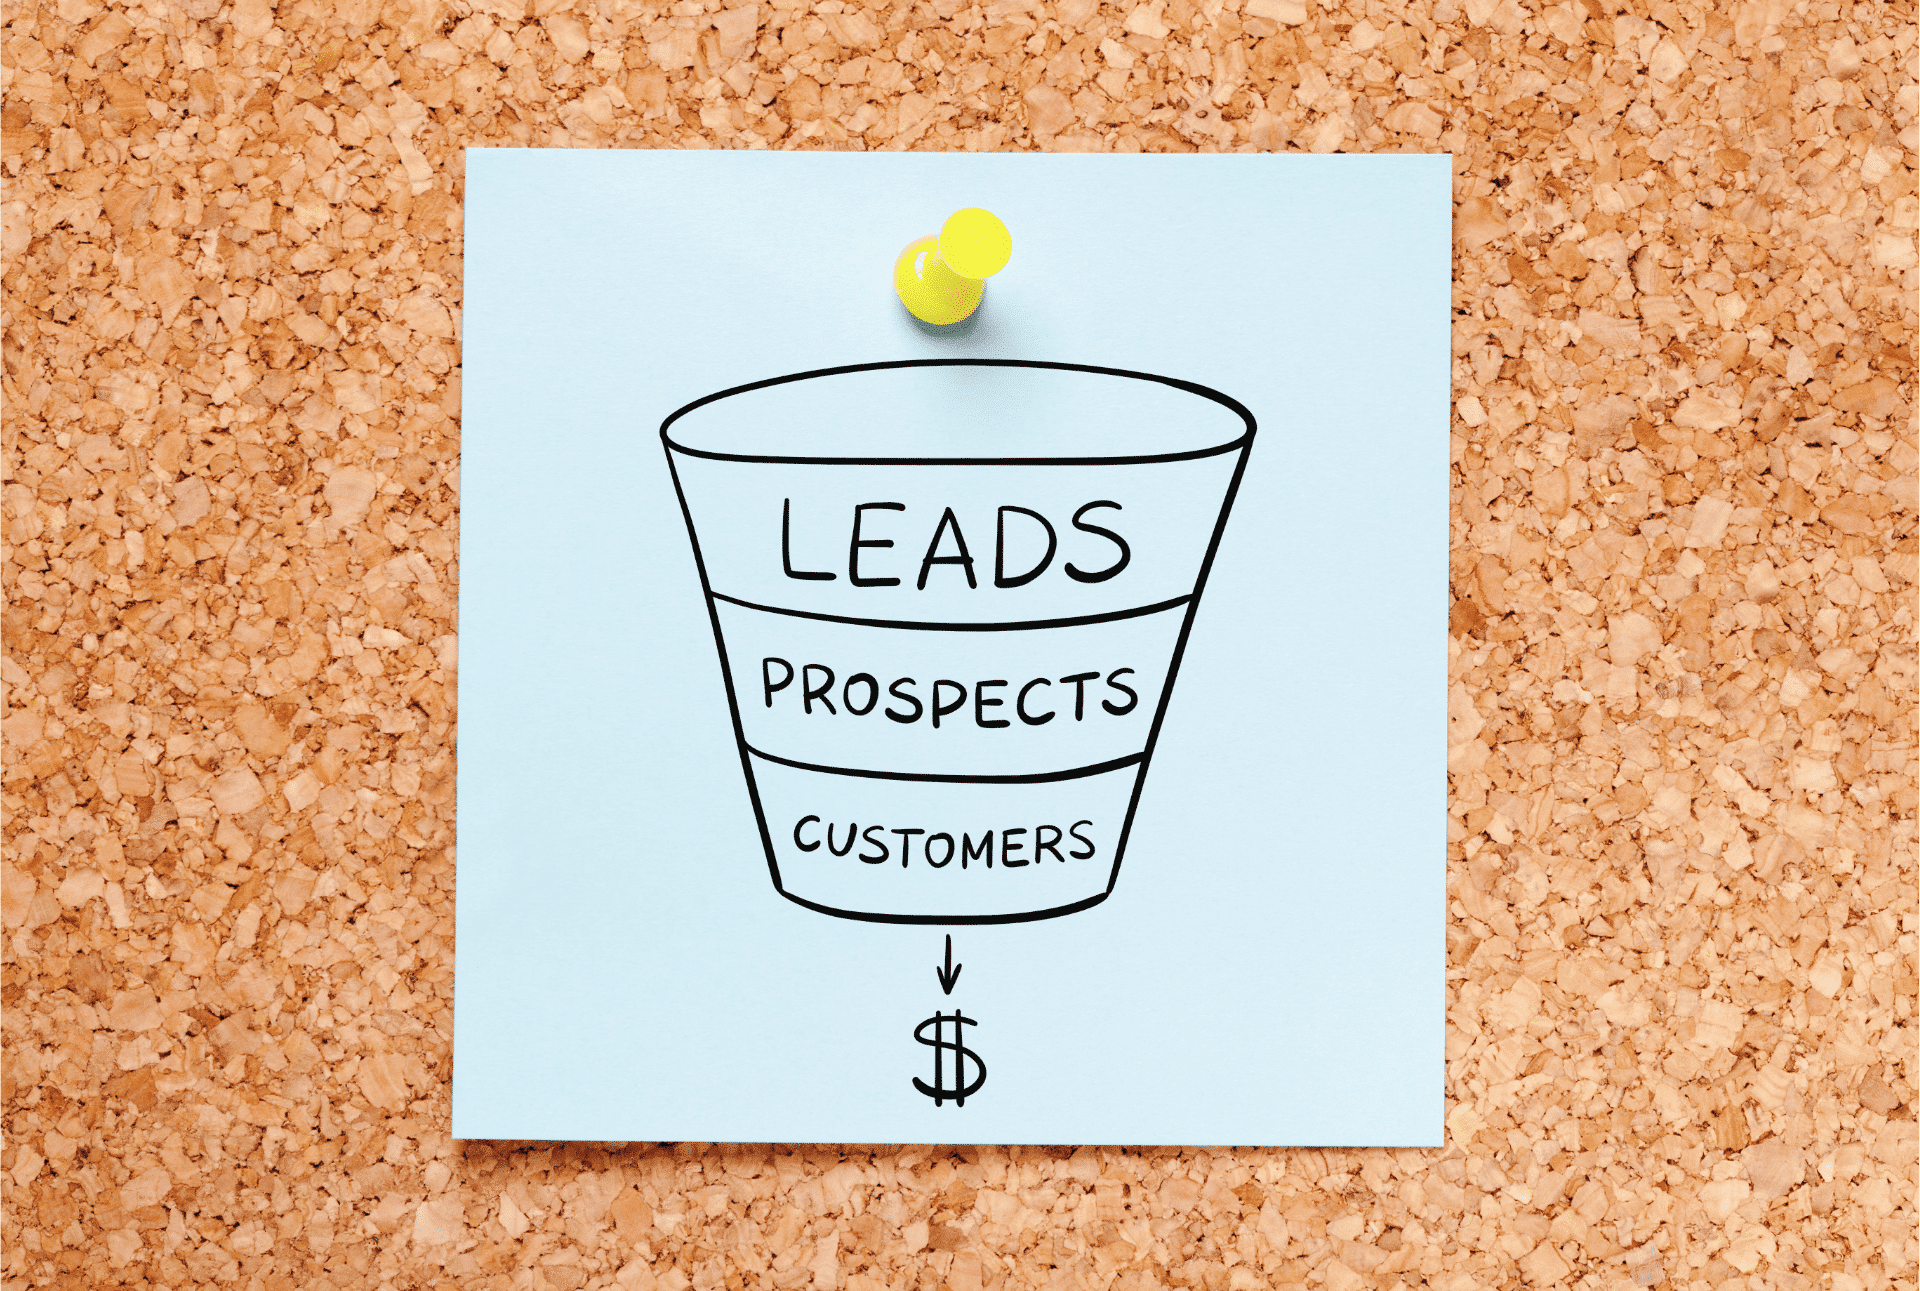 Le fasi del funnel di vendita: leads, prospects e customers